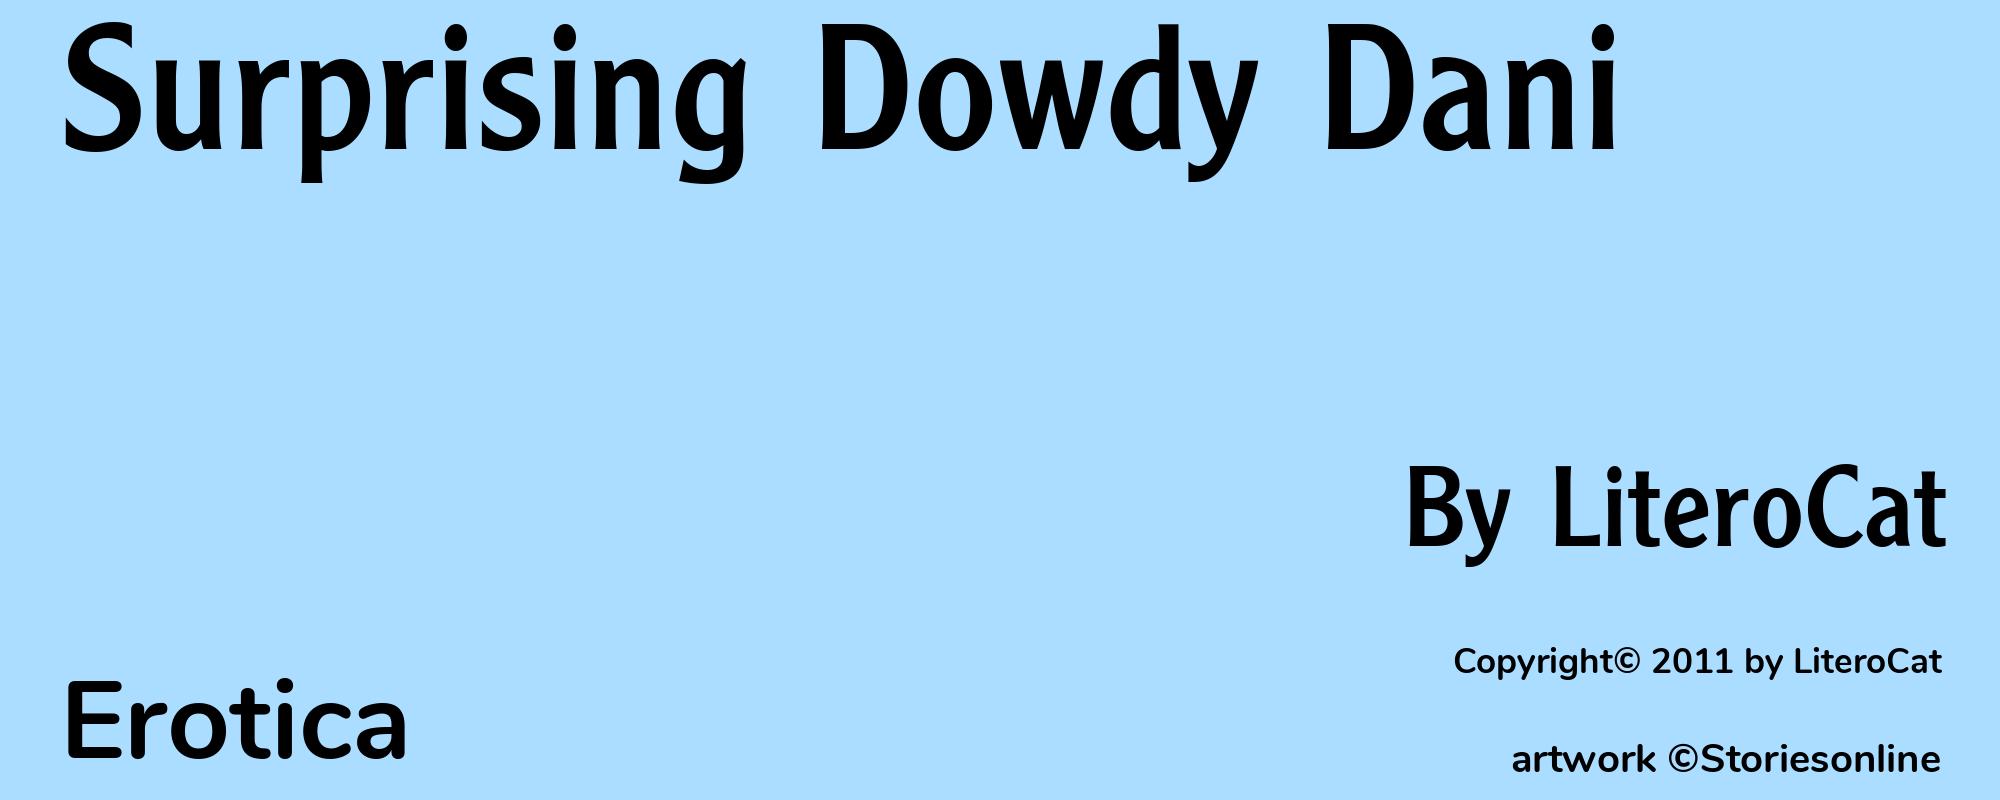 Surprising Dowdy Dani - Cover